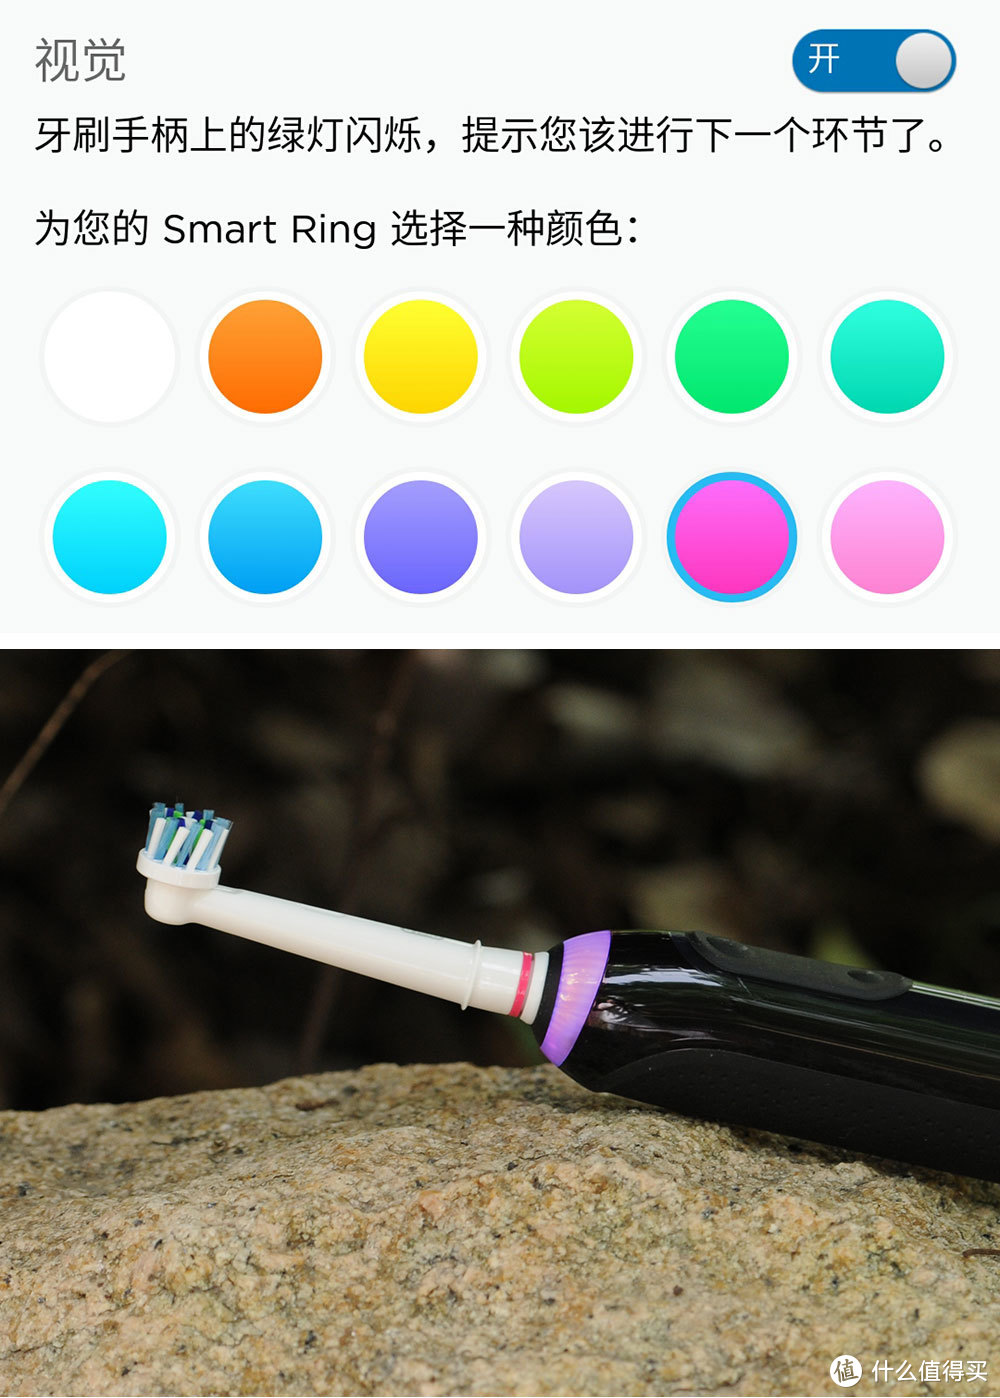 清洁强 更人性 欧乐B 3D声波蓝牙智能电动牙刷iBrush9000评测报告